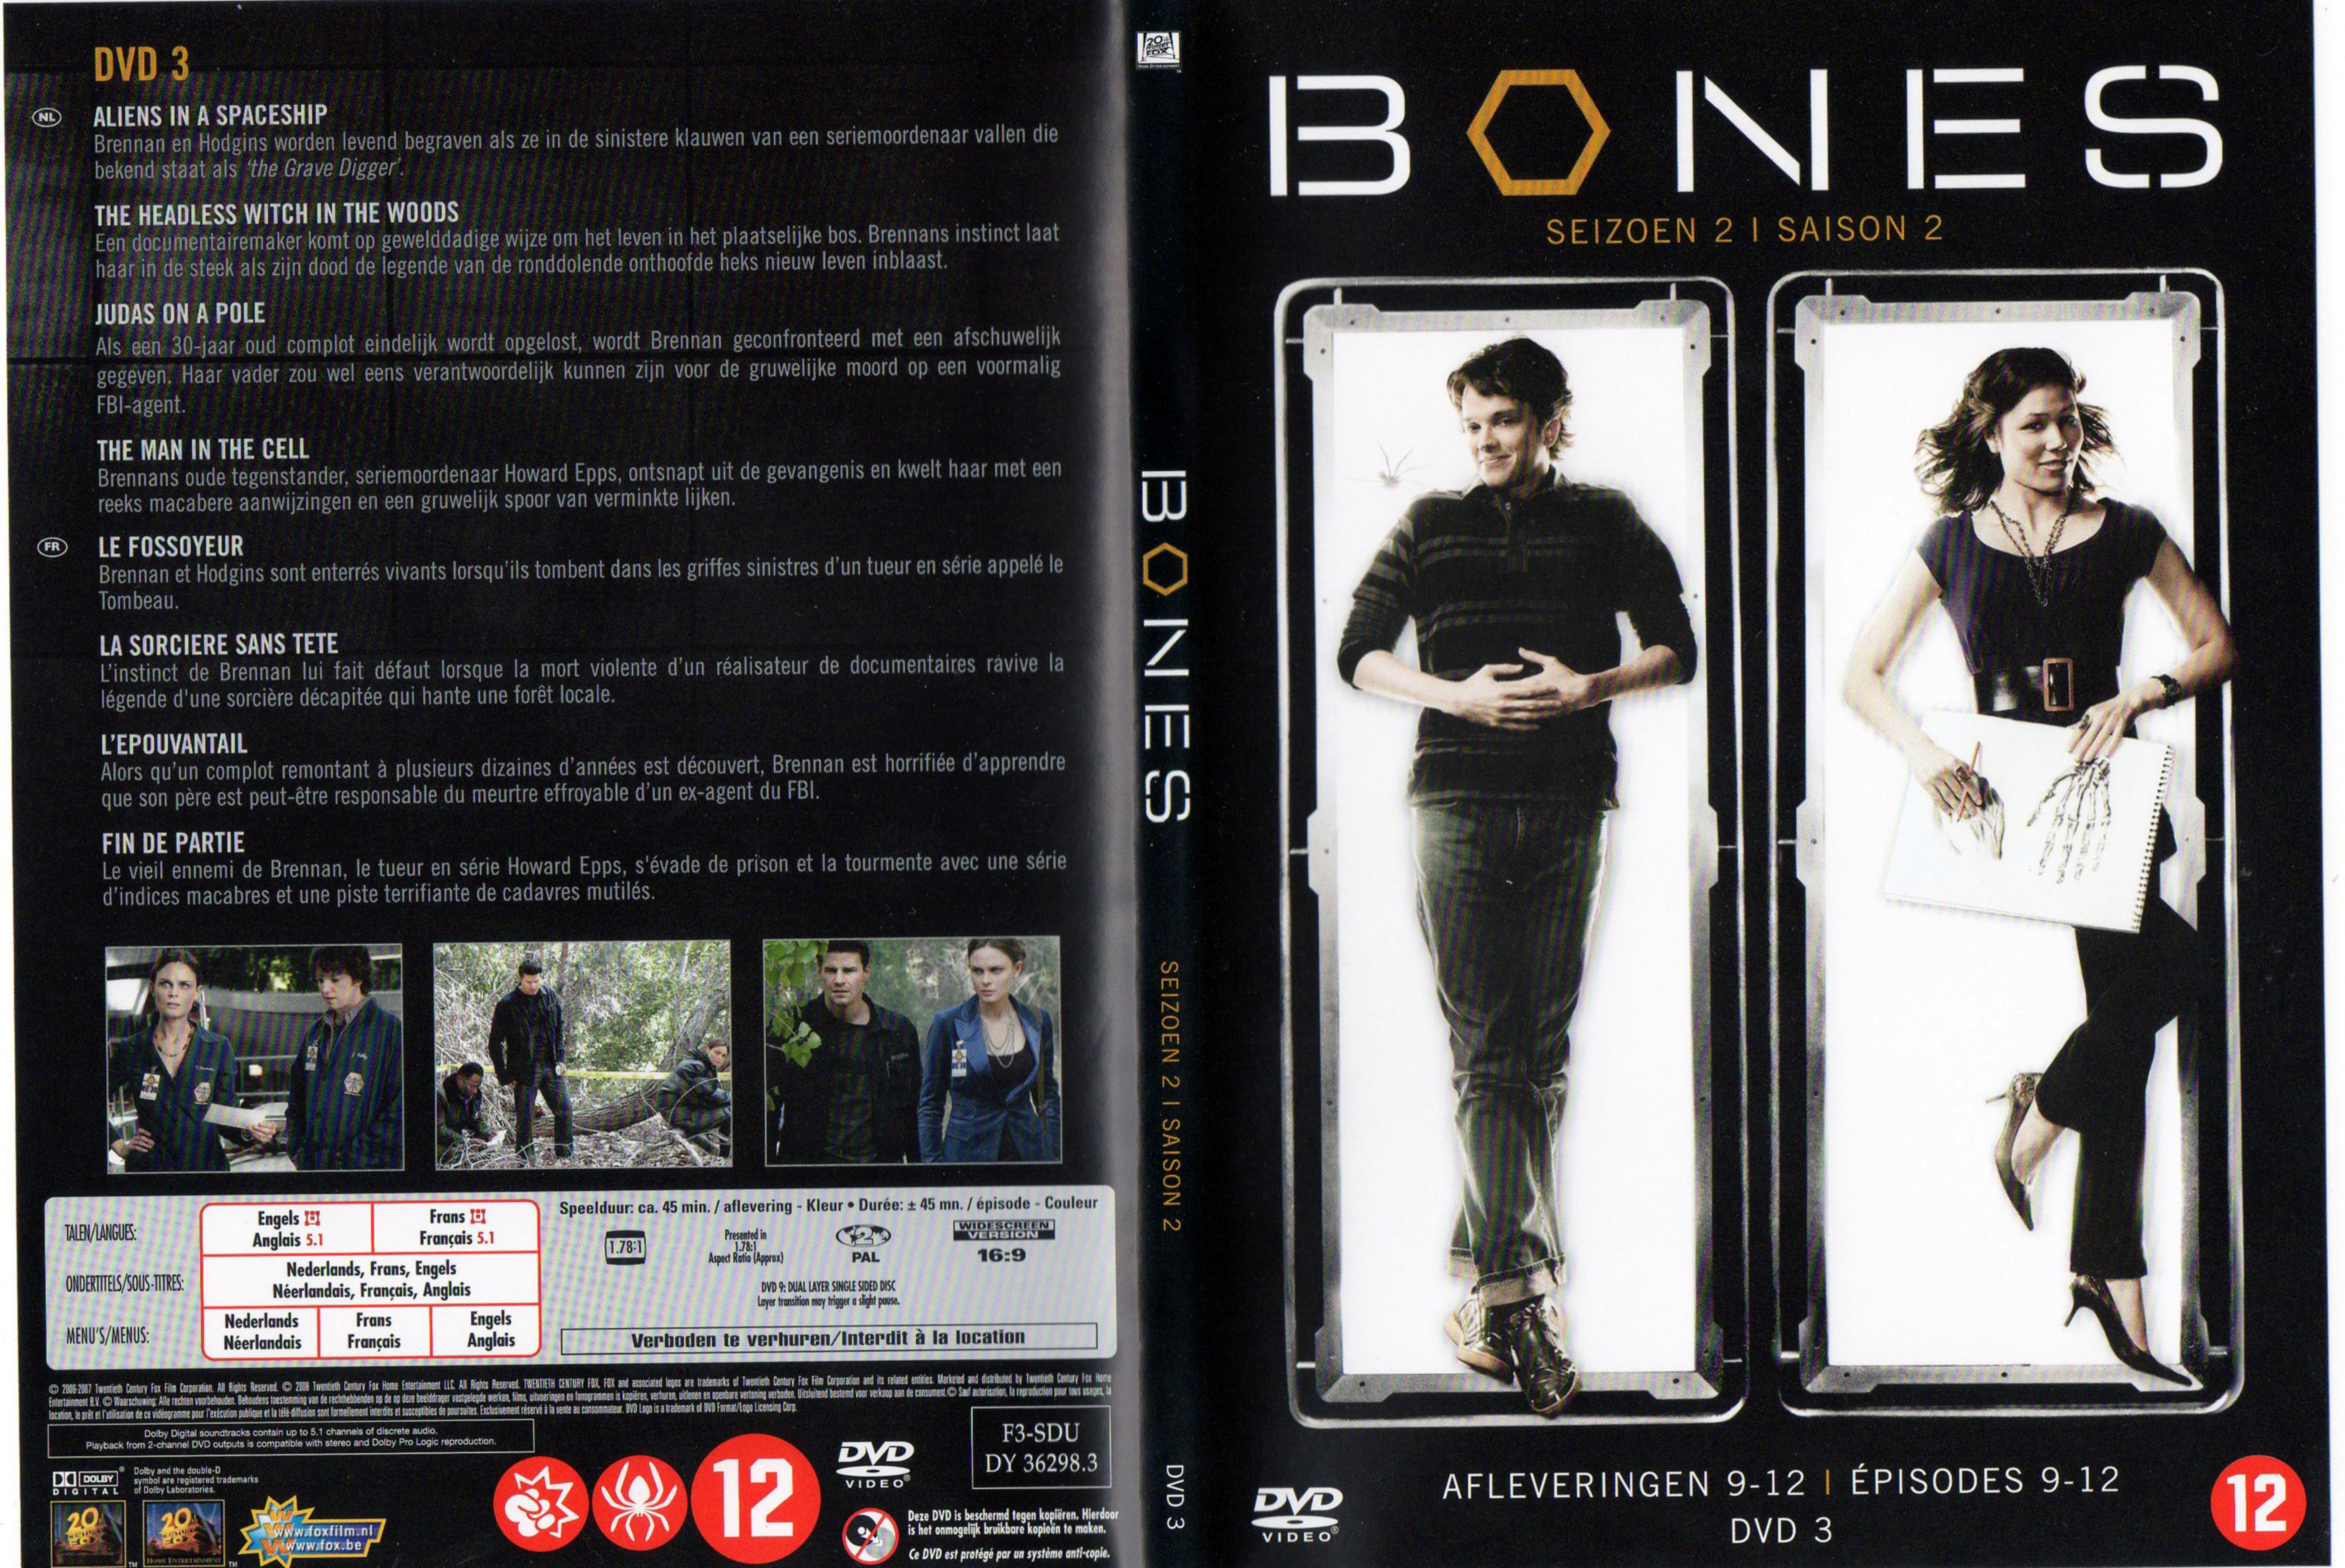 Jaquette DVD Bones Saison 2 DVD 3 v2